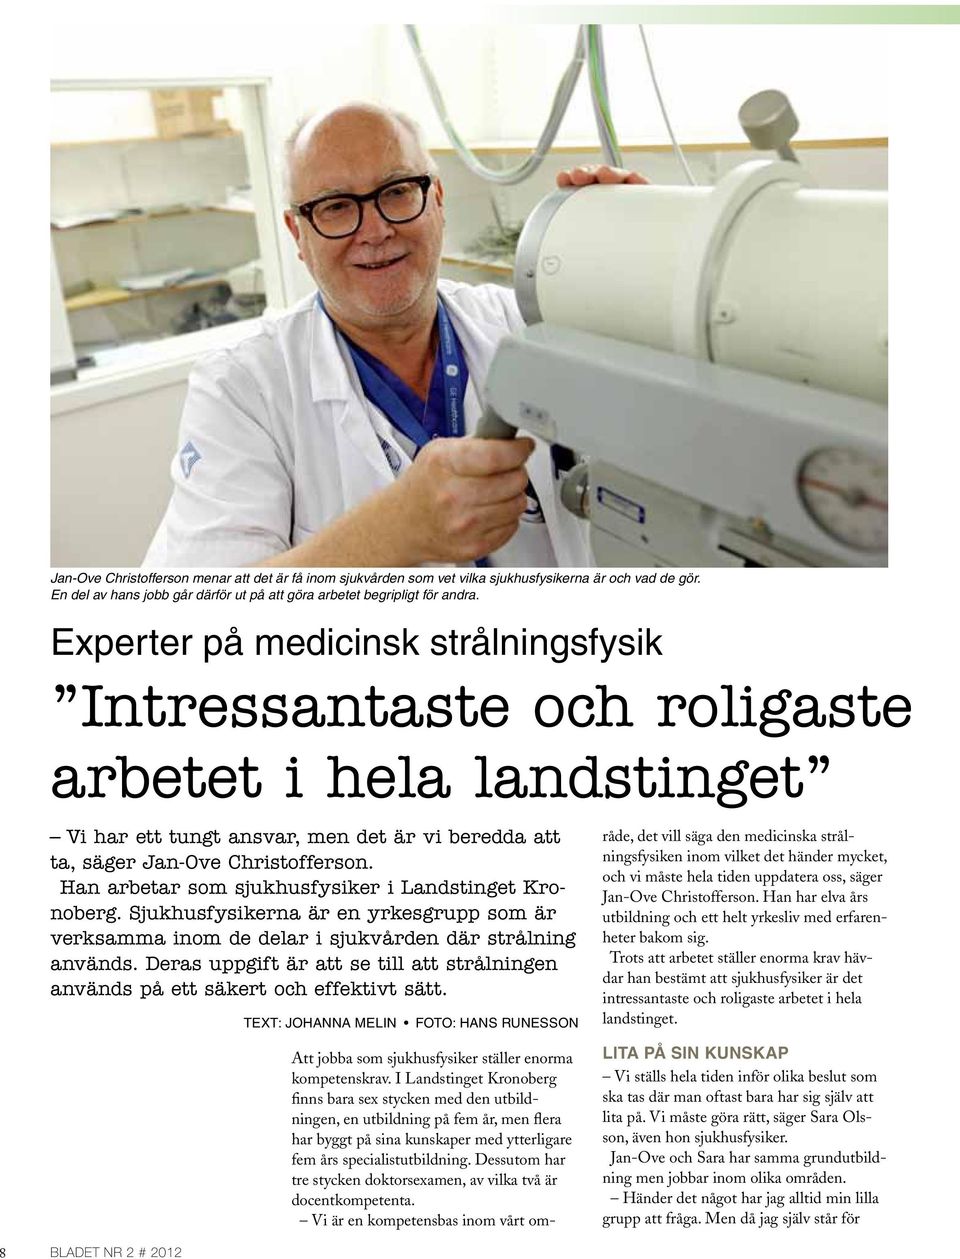 Han arbetar som sjukhusfysiker i landstinget Kronoberg. Sjukhusfysikerna är en yrkesgrupp som är verksamma inom de delar i sjukvården där strålning används.